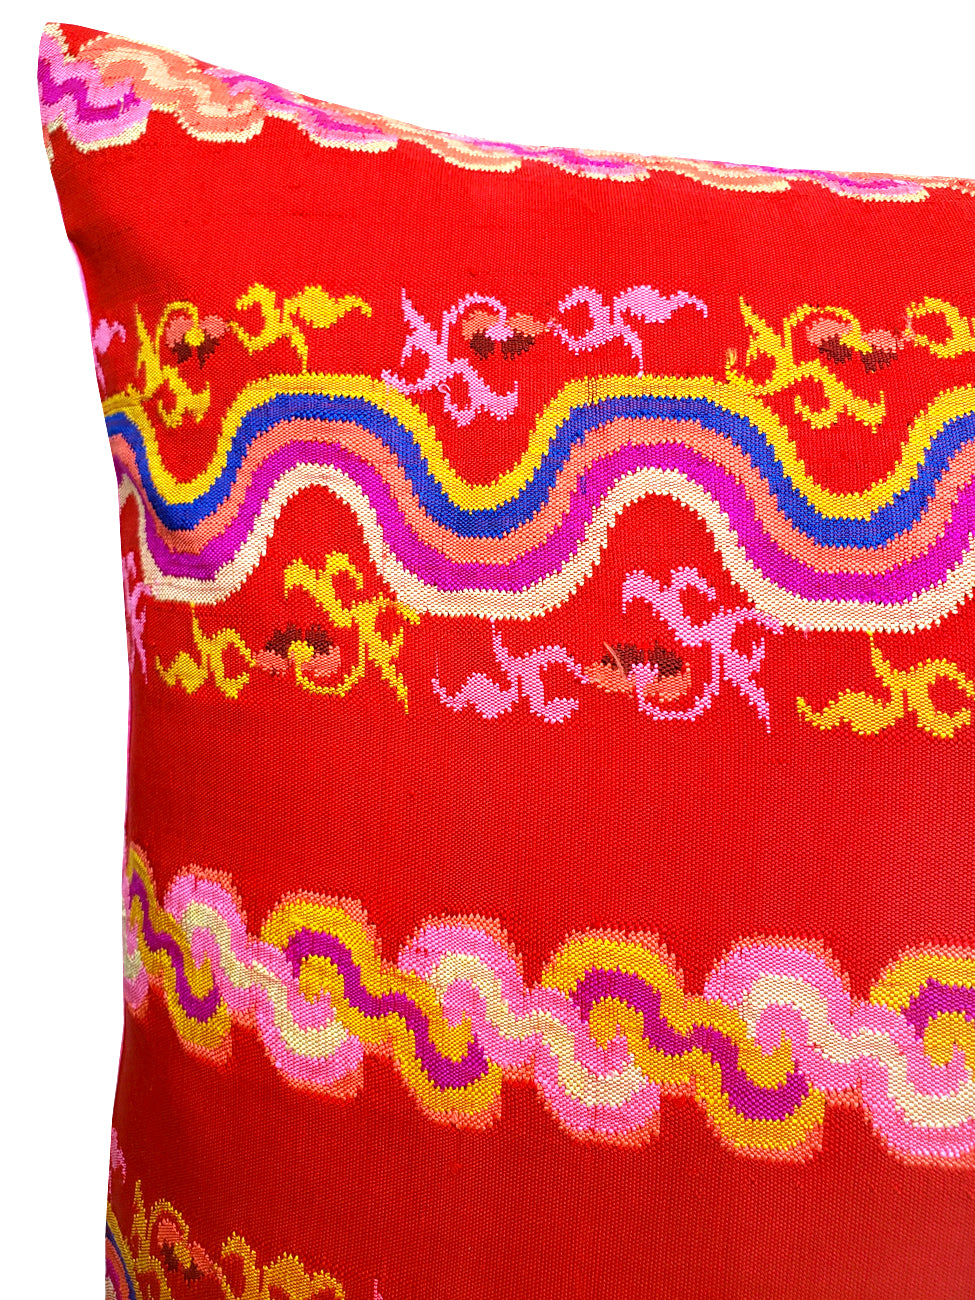 Burmese Silk Pillow Red Pink